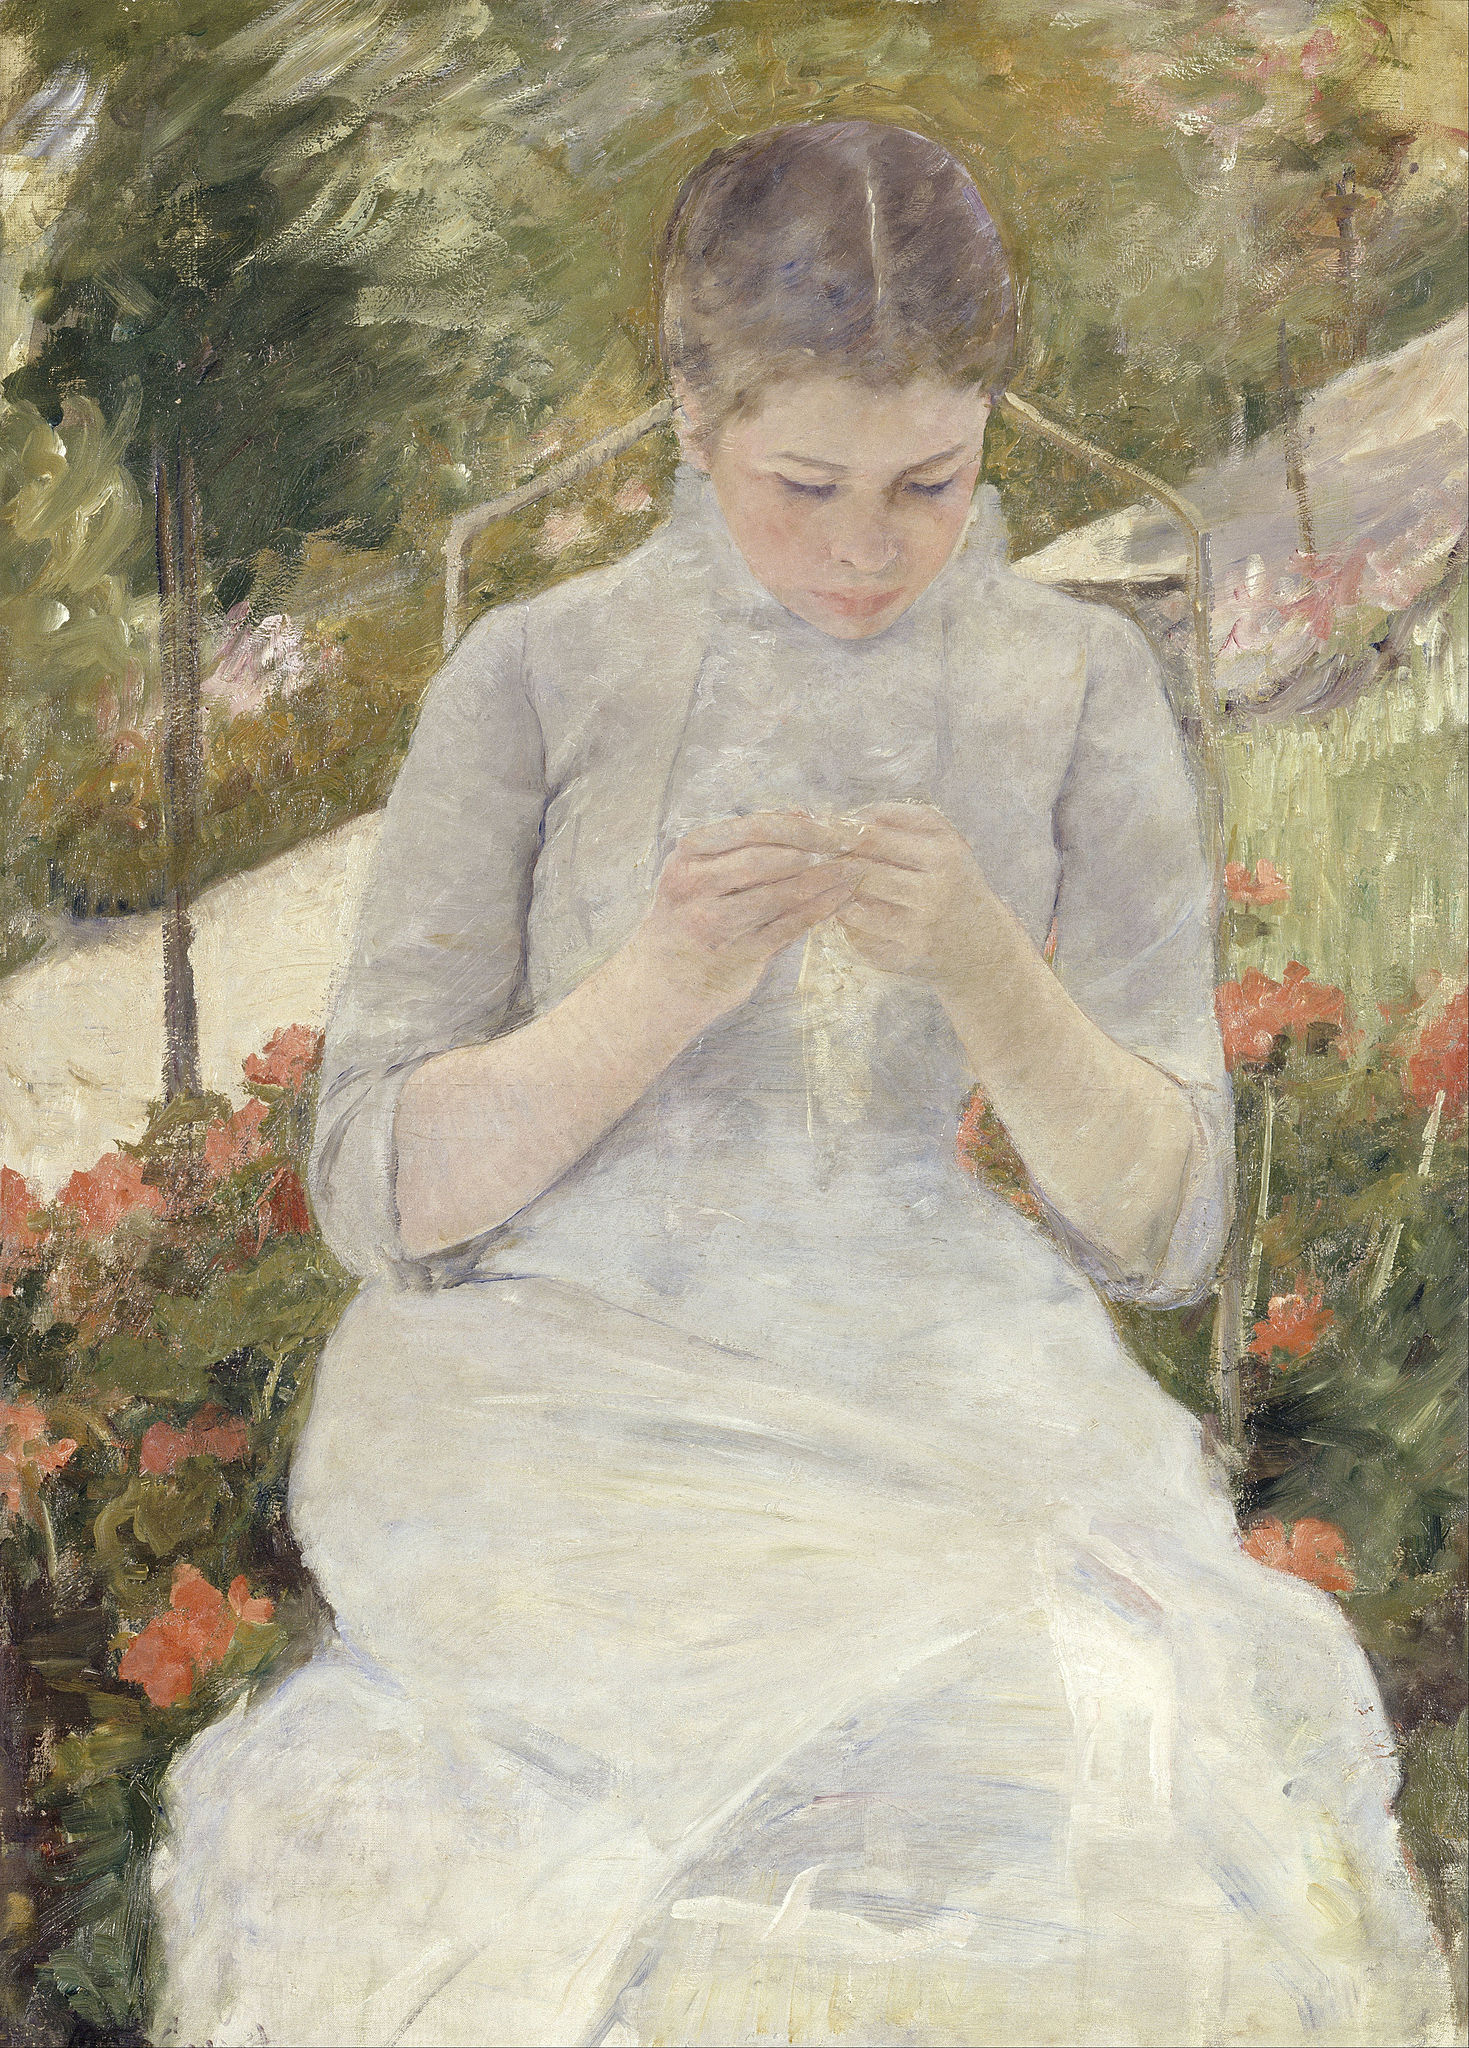 Dziewczyna w ogrodzie by Mary Cassatt - 1880-1882 r. - 65 x 92 cm 